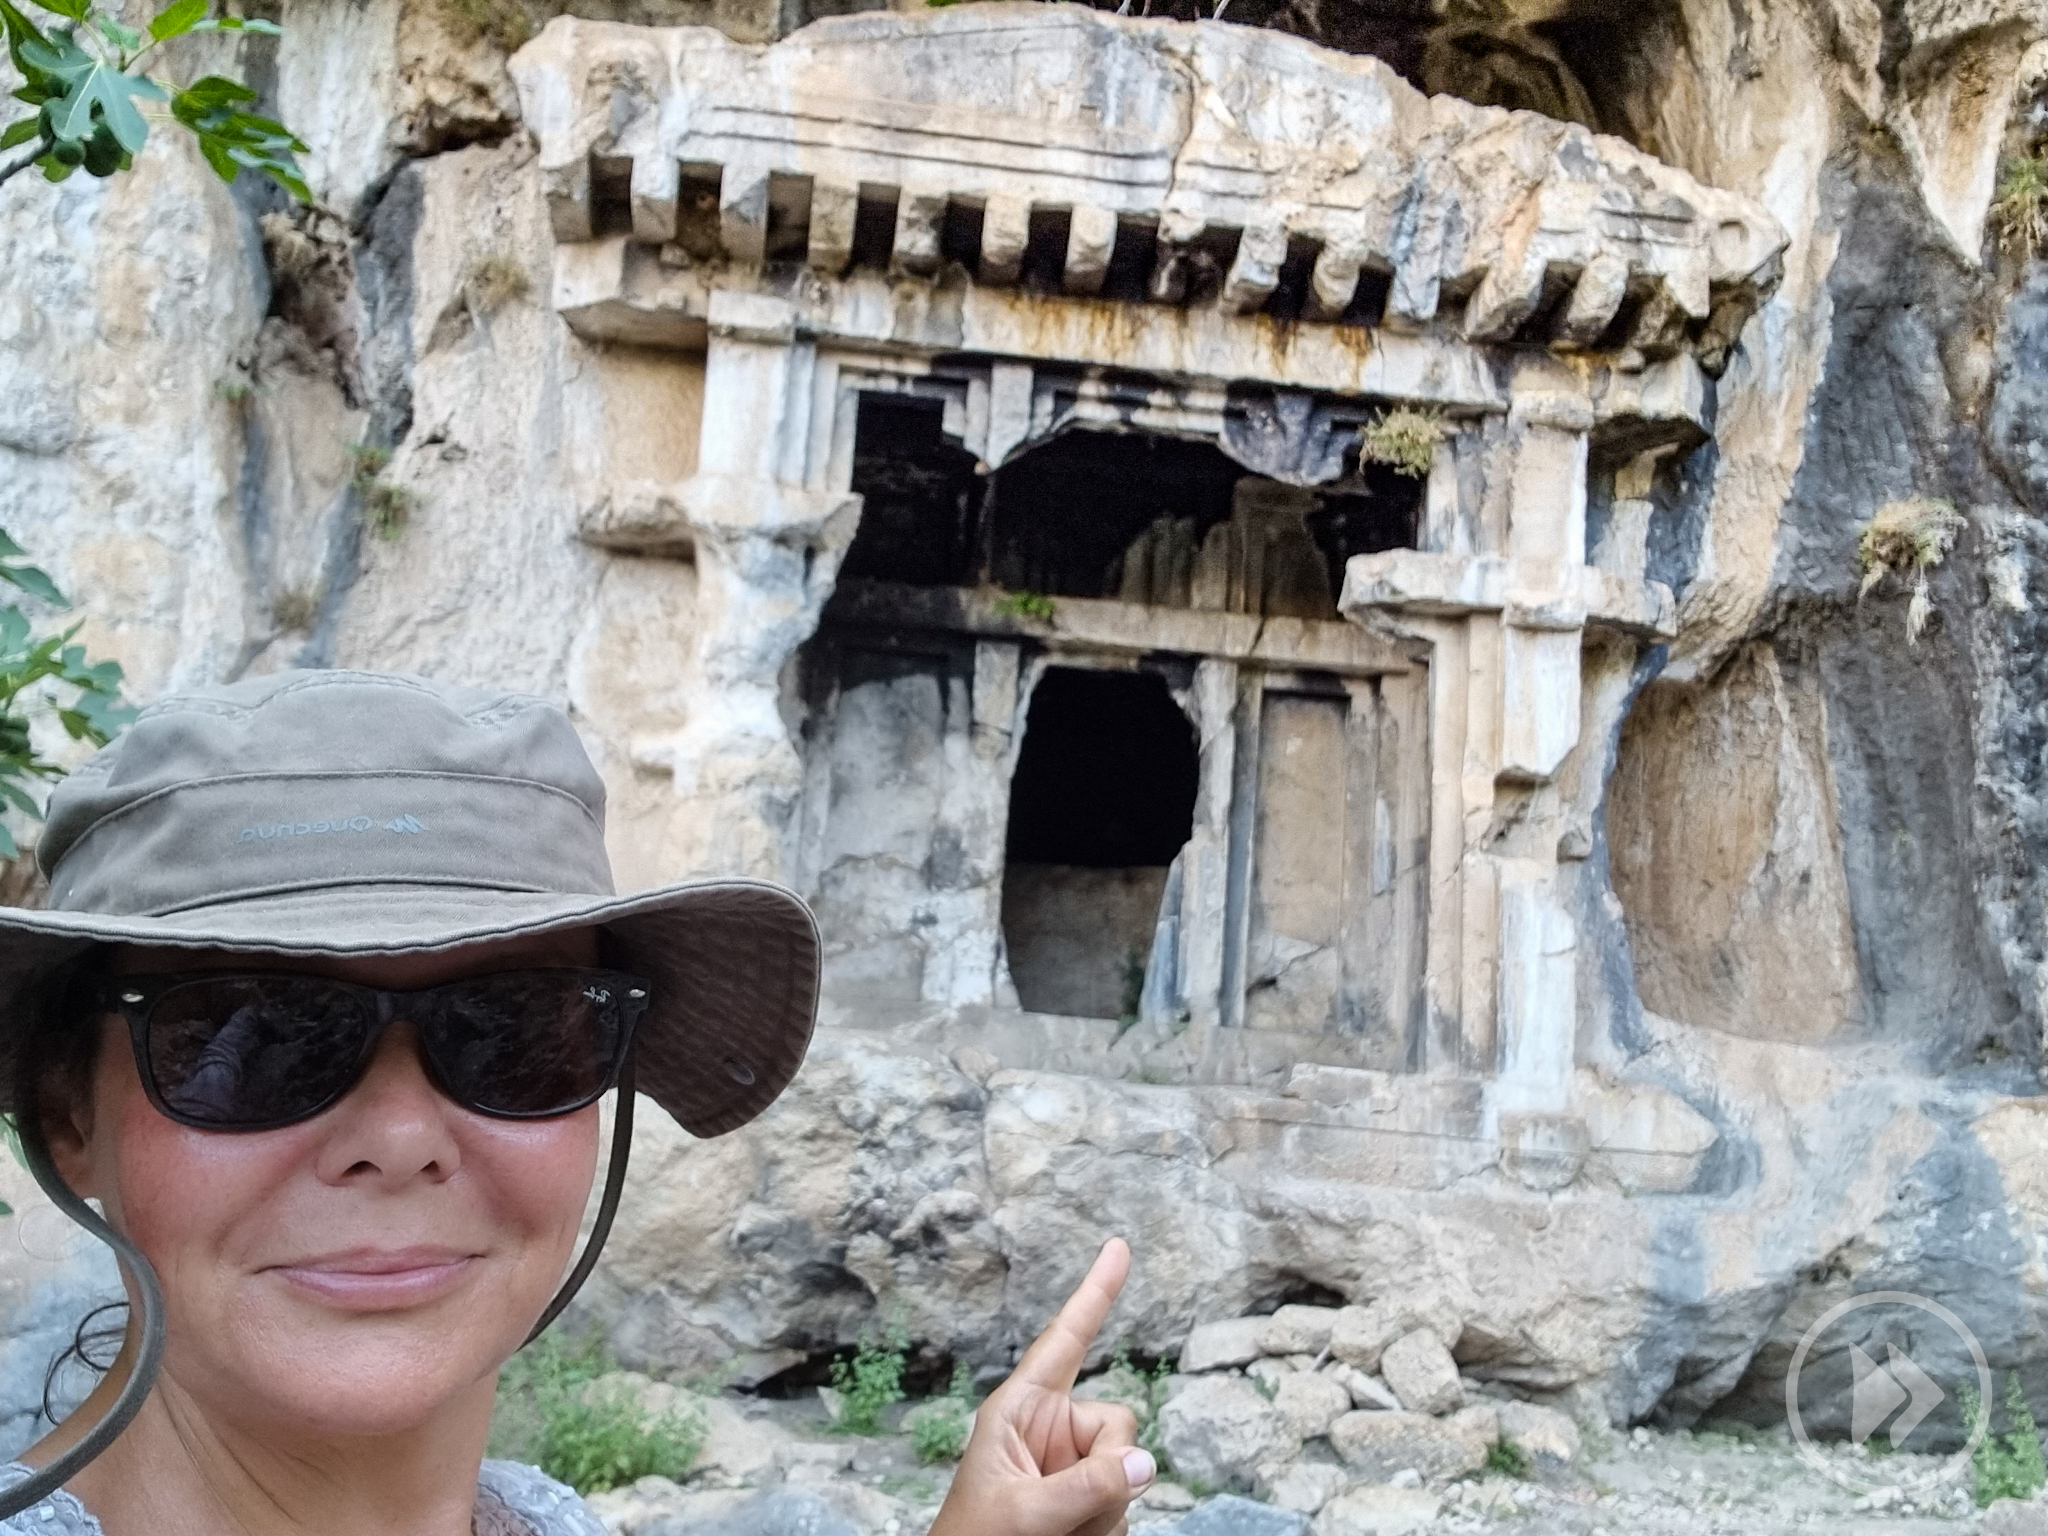 Turcja darmowe atrakcje
co warto zobaczyć w Turcji
Pinara
grobowce i amfiteatr za darmo